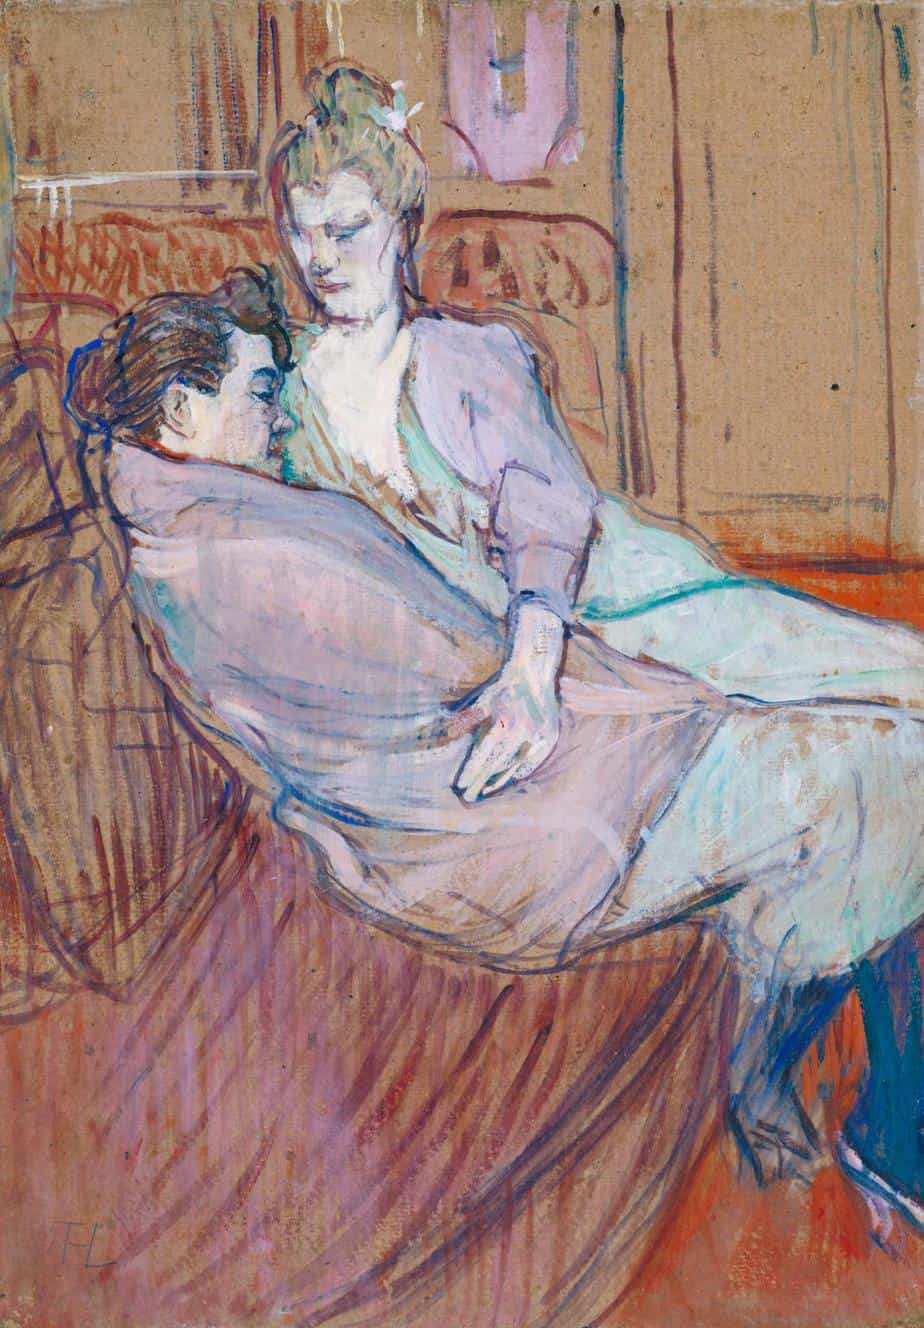 Henri de Toulouse-Lautrec
The Two Friends
1894